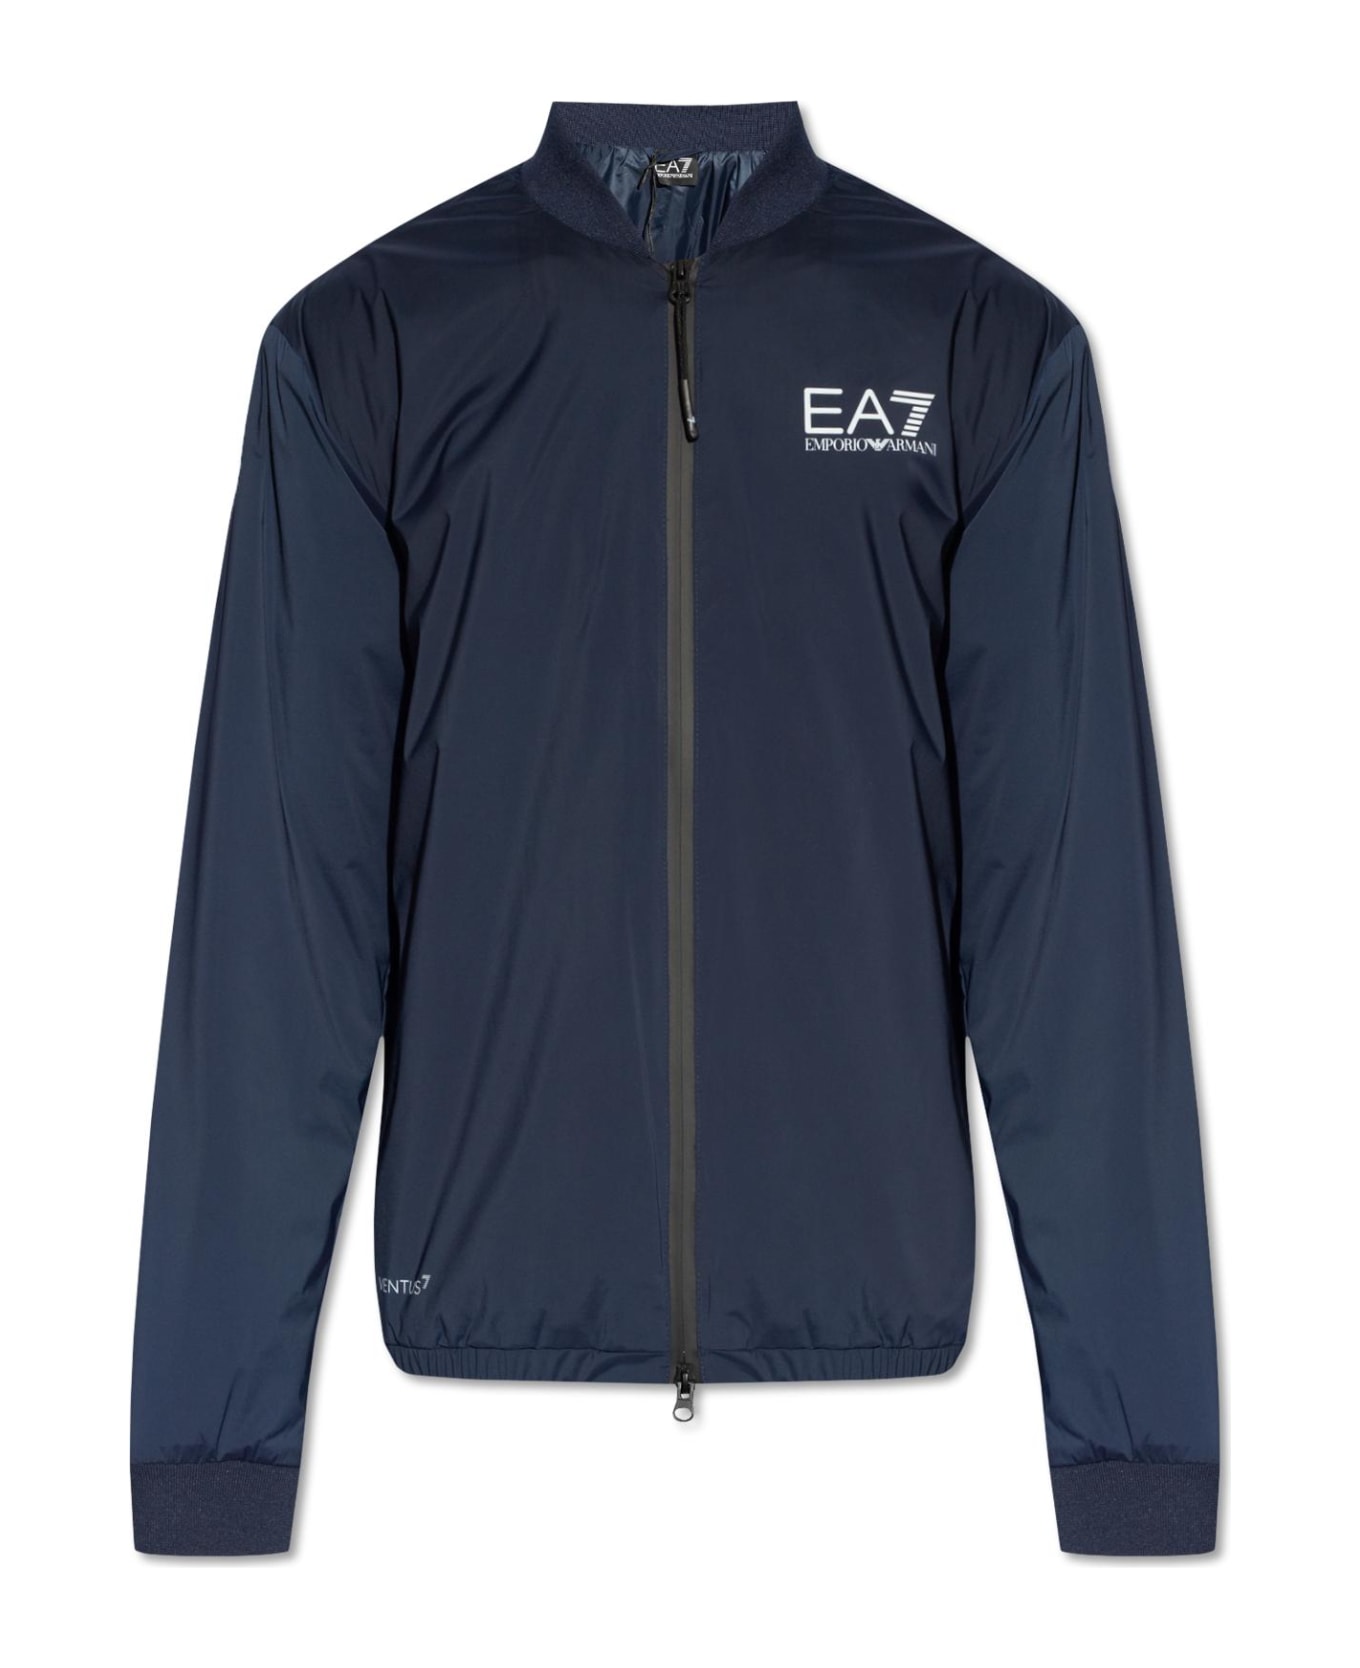 EA7 Emporio Armani Jacket With Logo - Blue